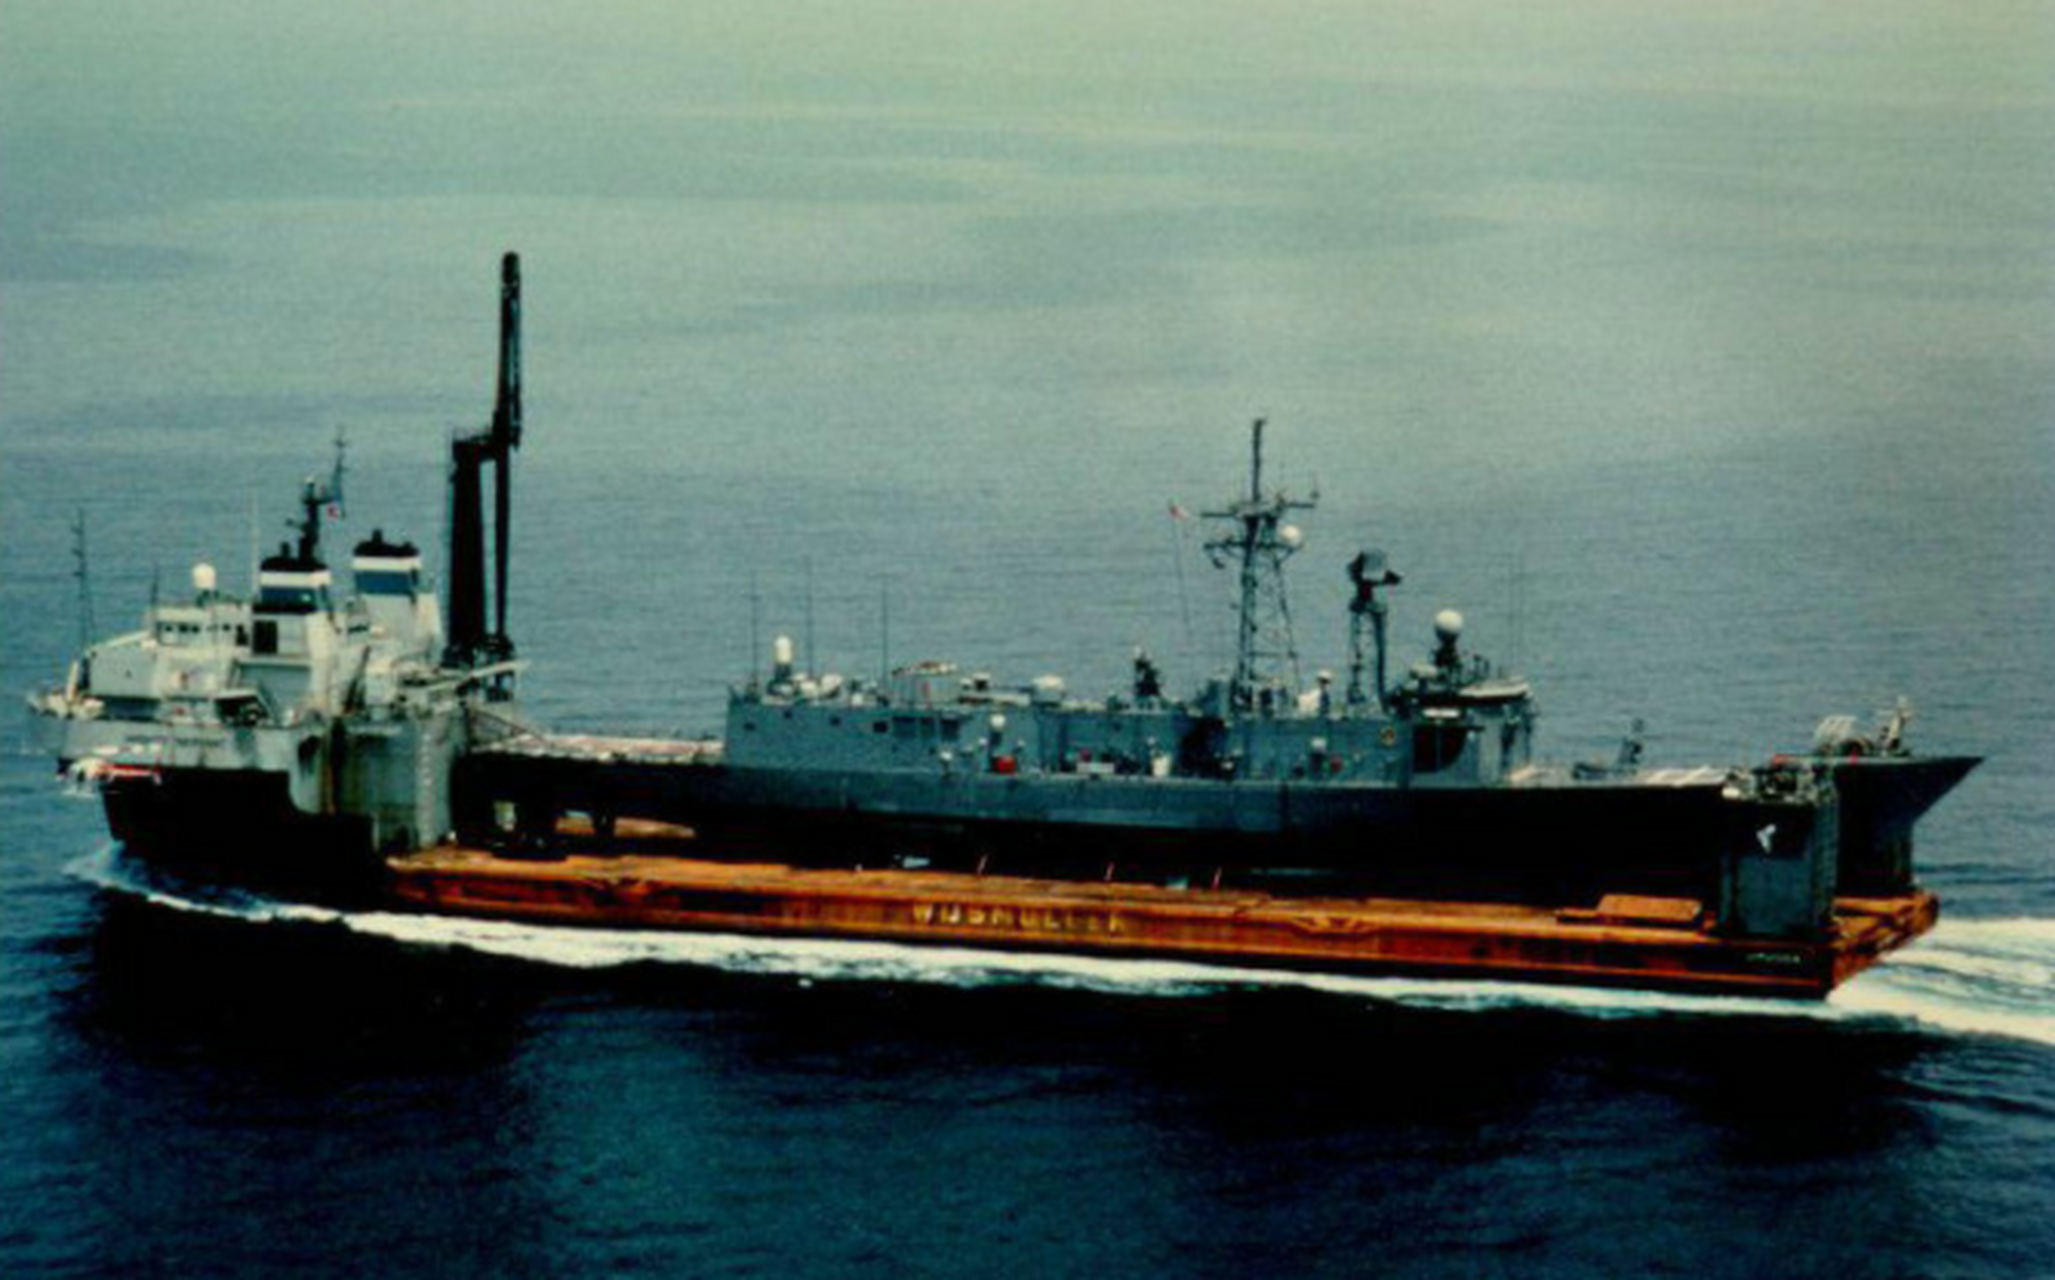 1988年4月14日,美国海军"罗伯茨"号护卫舰刚驶出霍尔木兹海峡,突然"轰